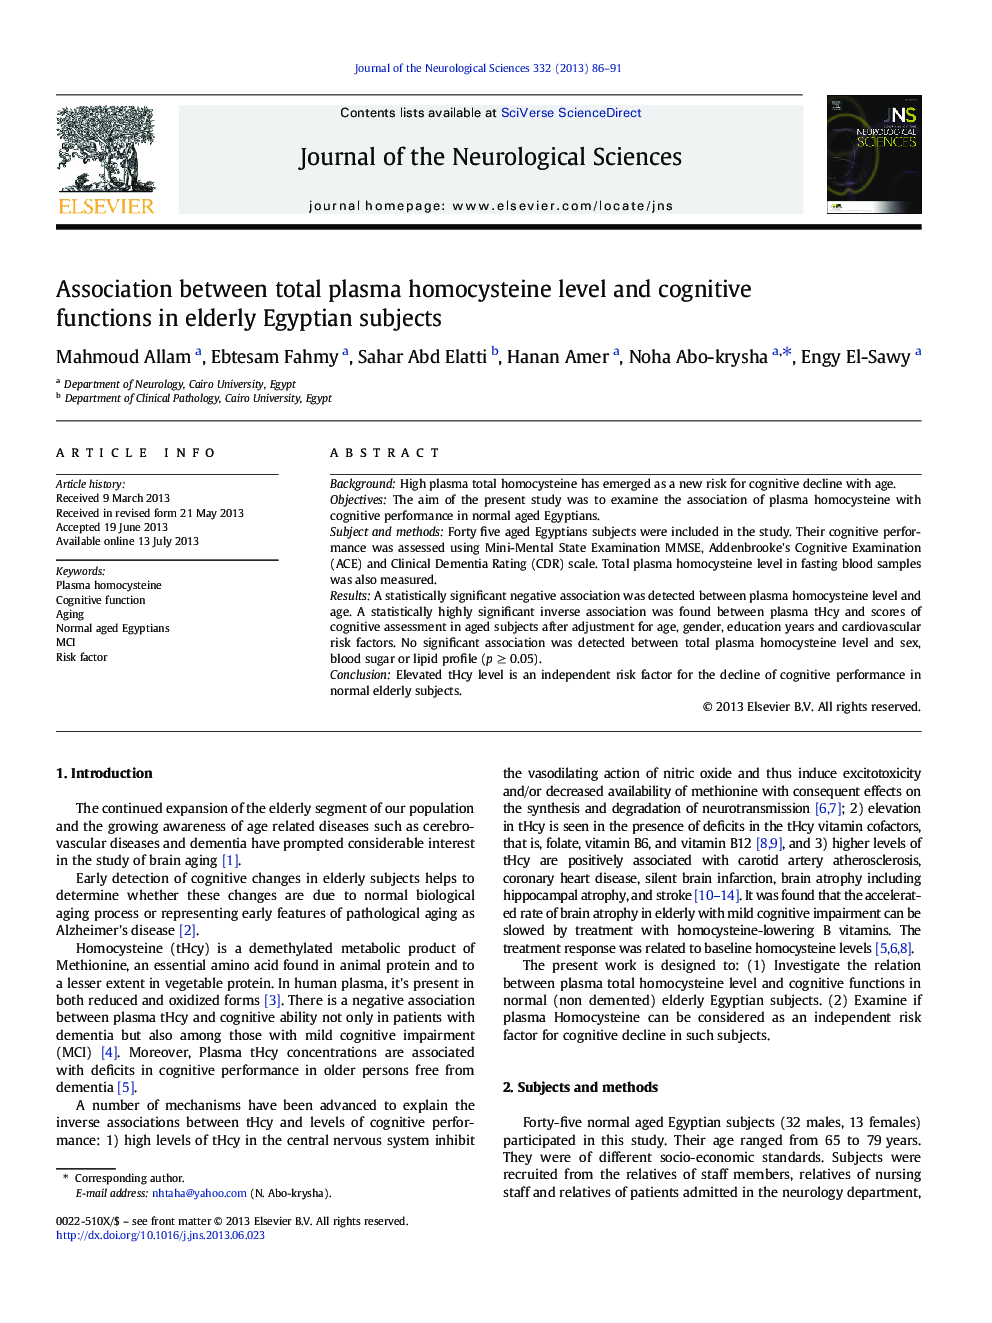 ارتباط سطح کل هوموسیستئین پلاسما و عملکرد شناختی در افراد سالخور مصری 